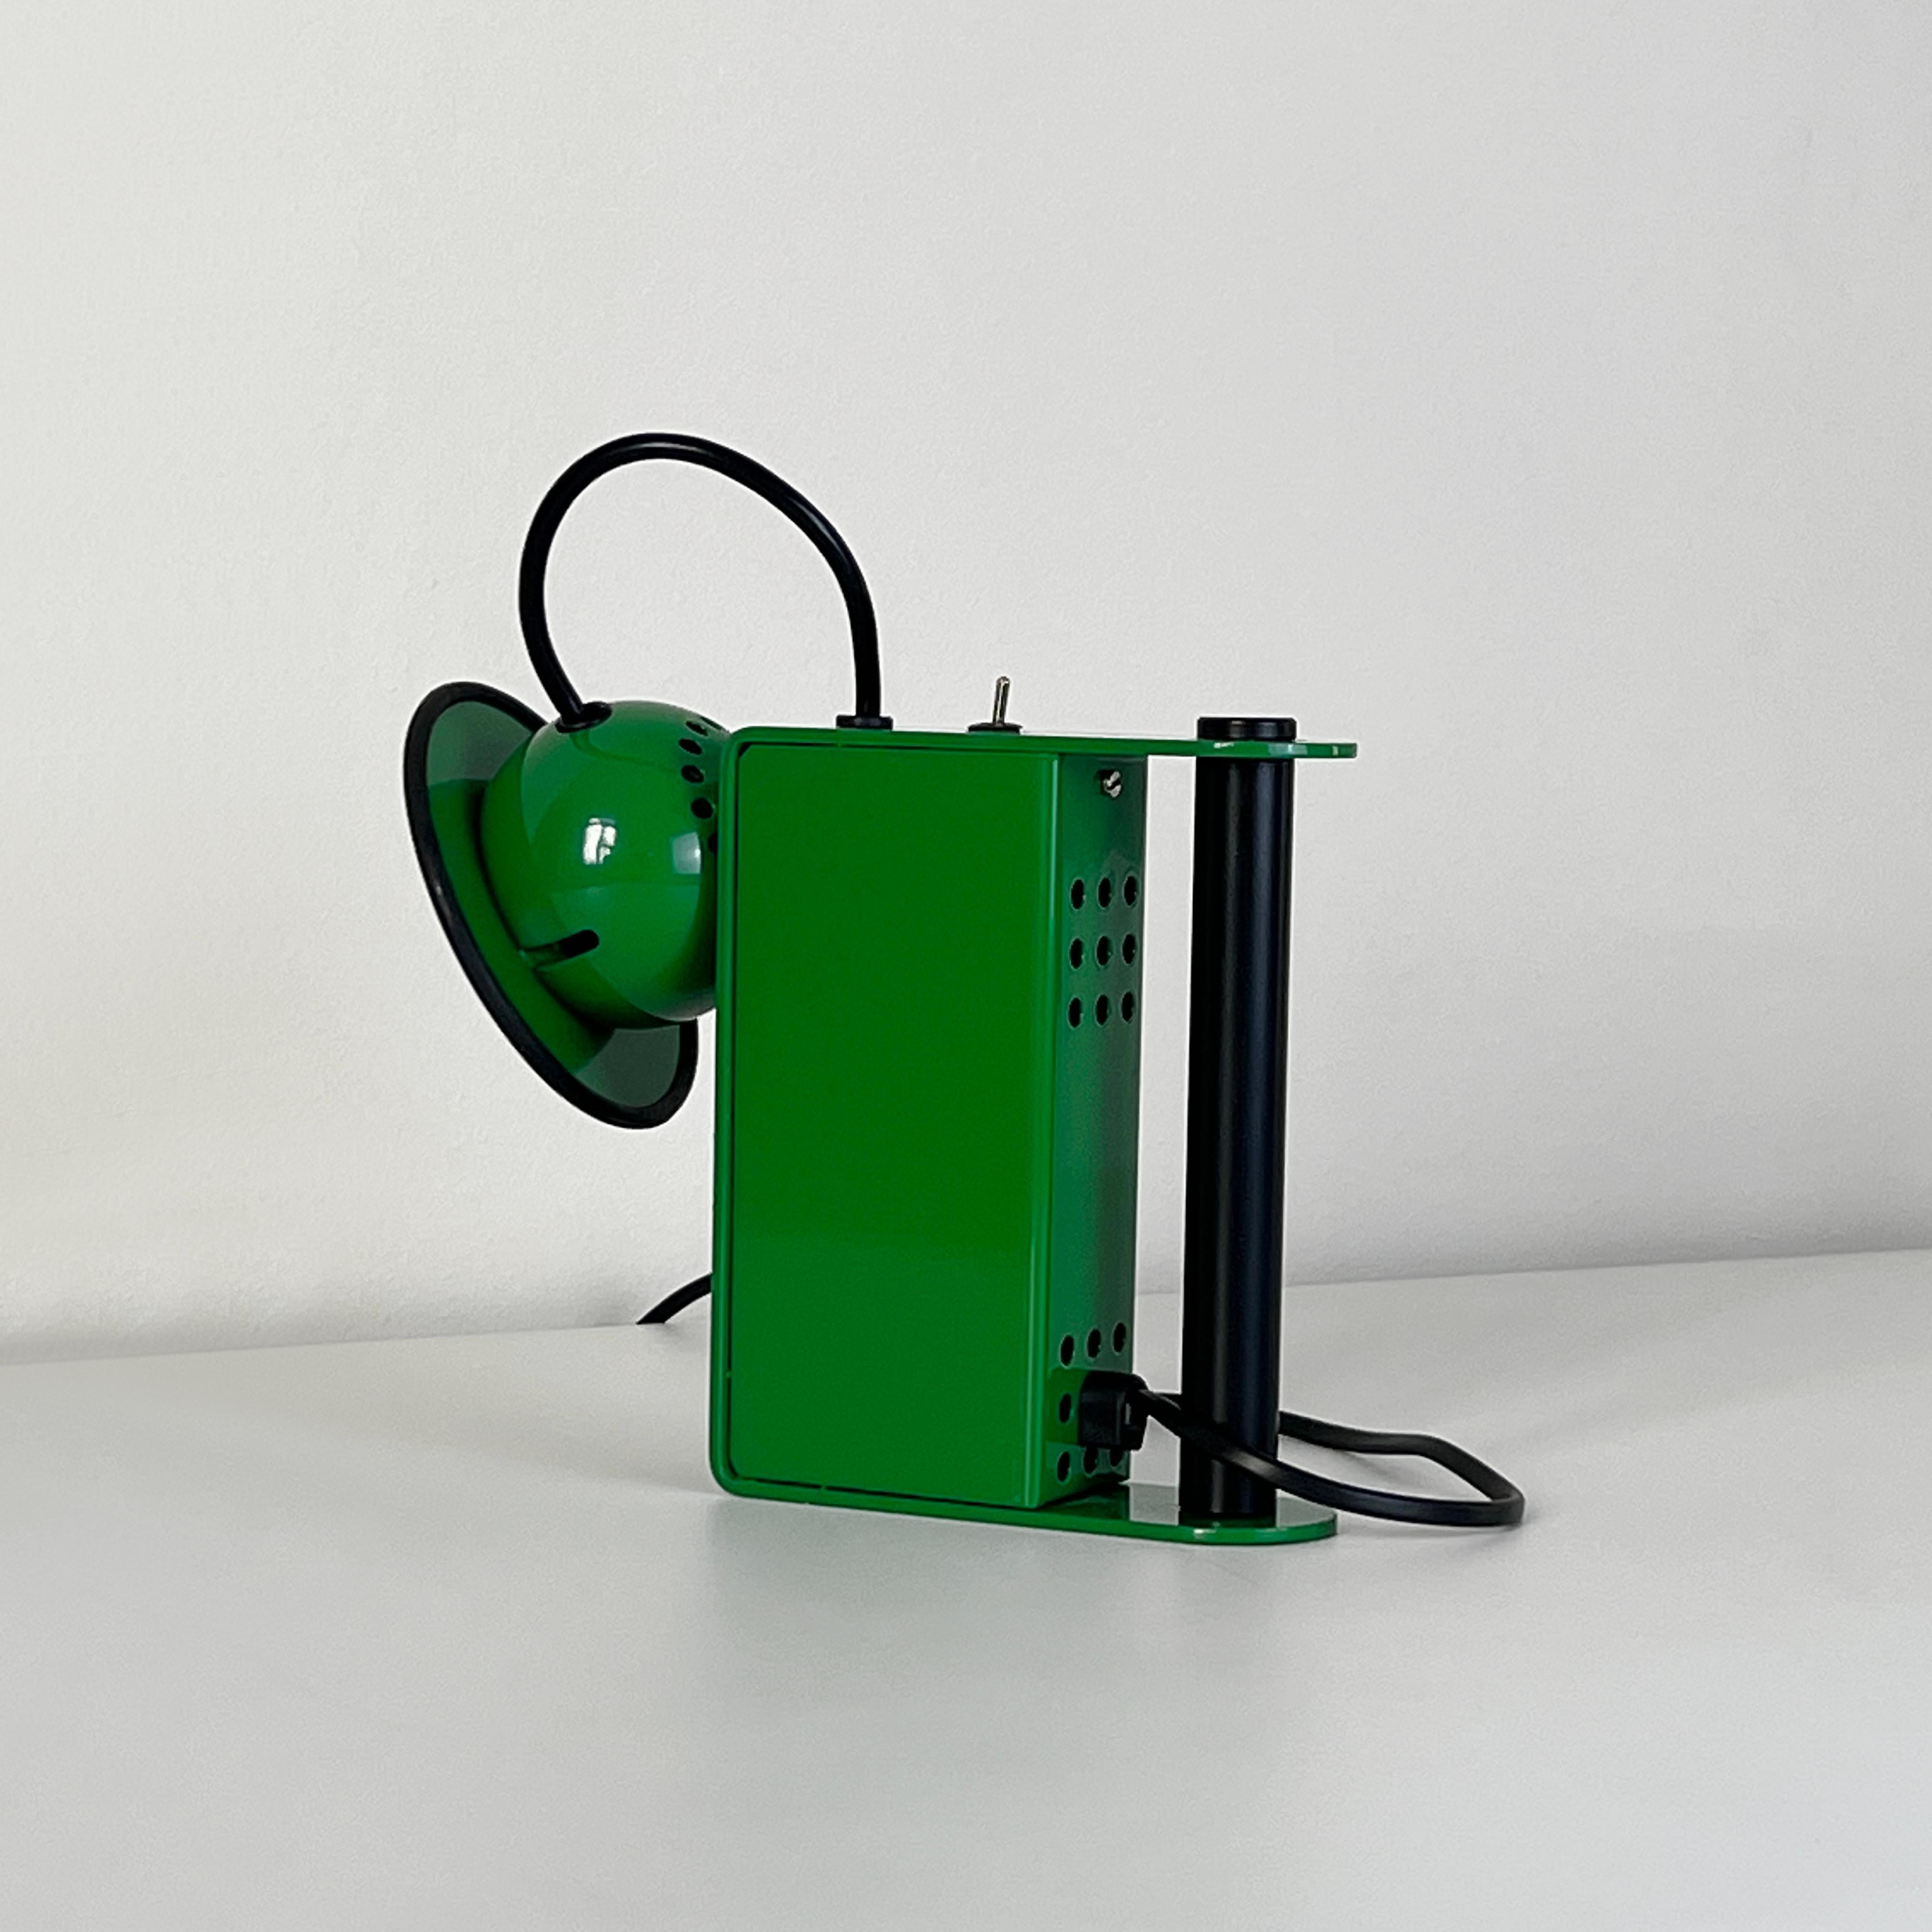 Italian Green Minibox Table Lamp by Gae Aulenti & Piero Castiglioni for Stilnovo, Italy For Sale